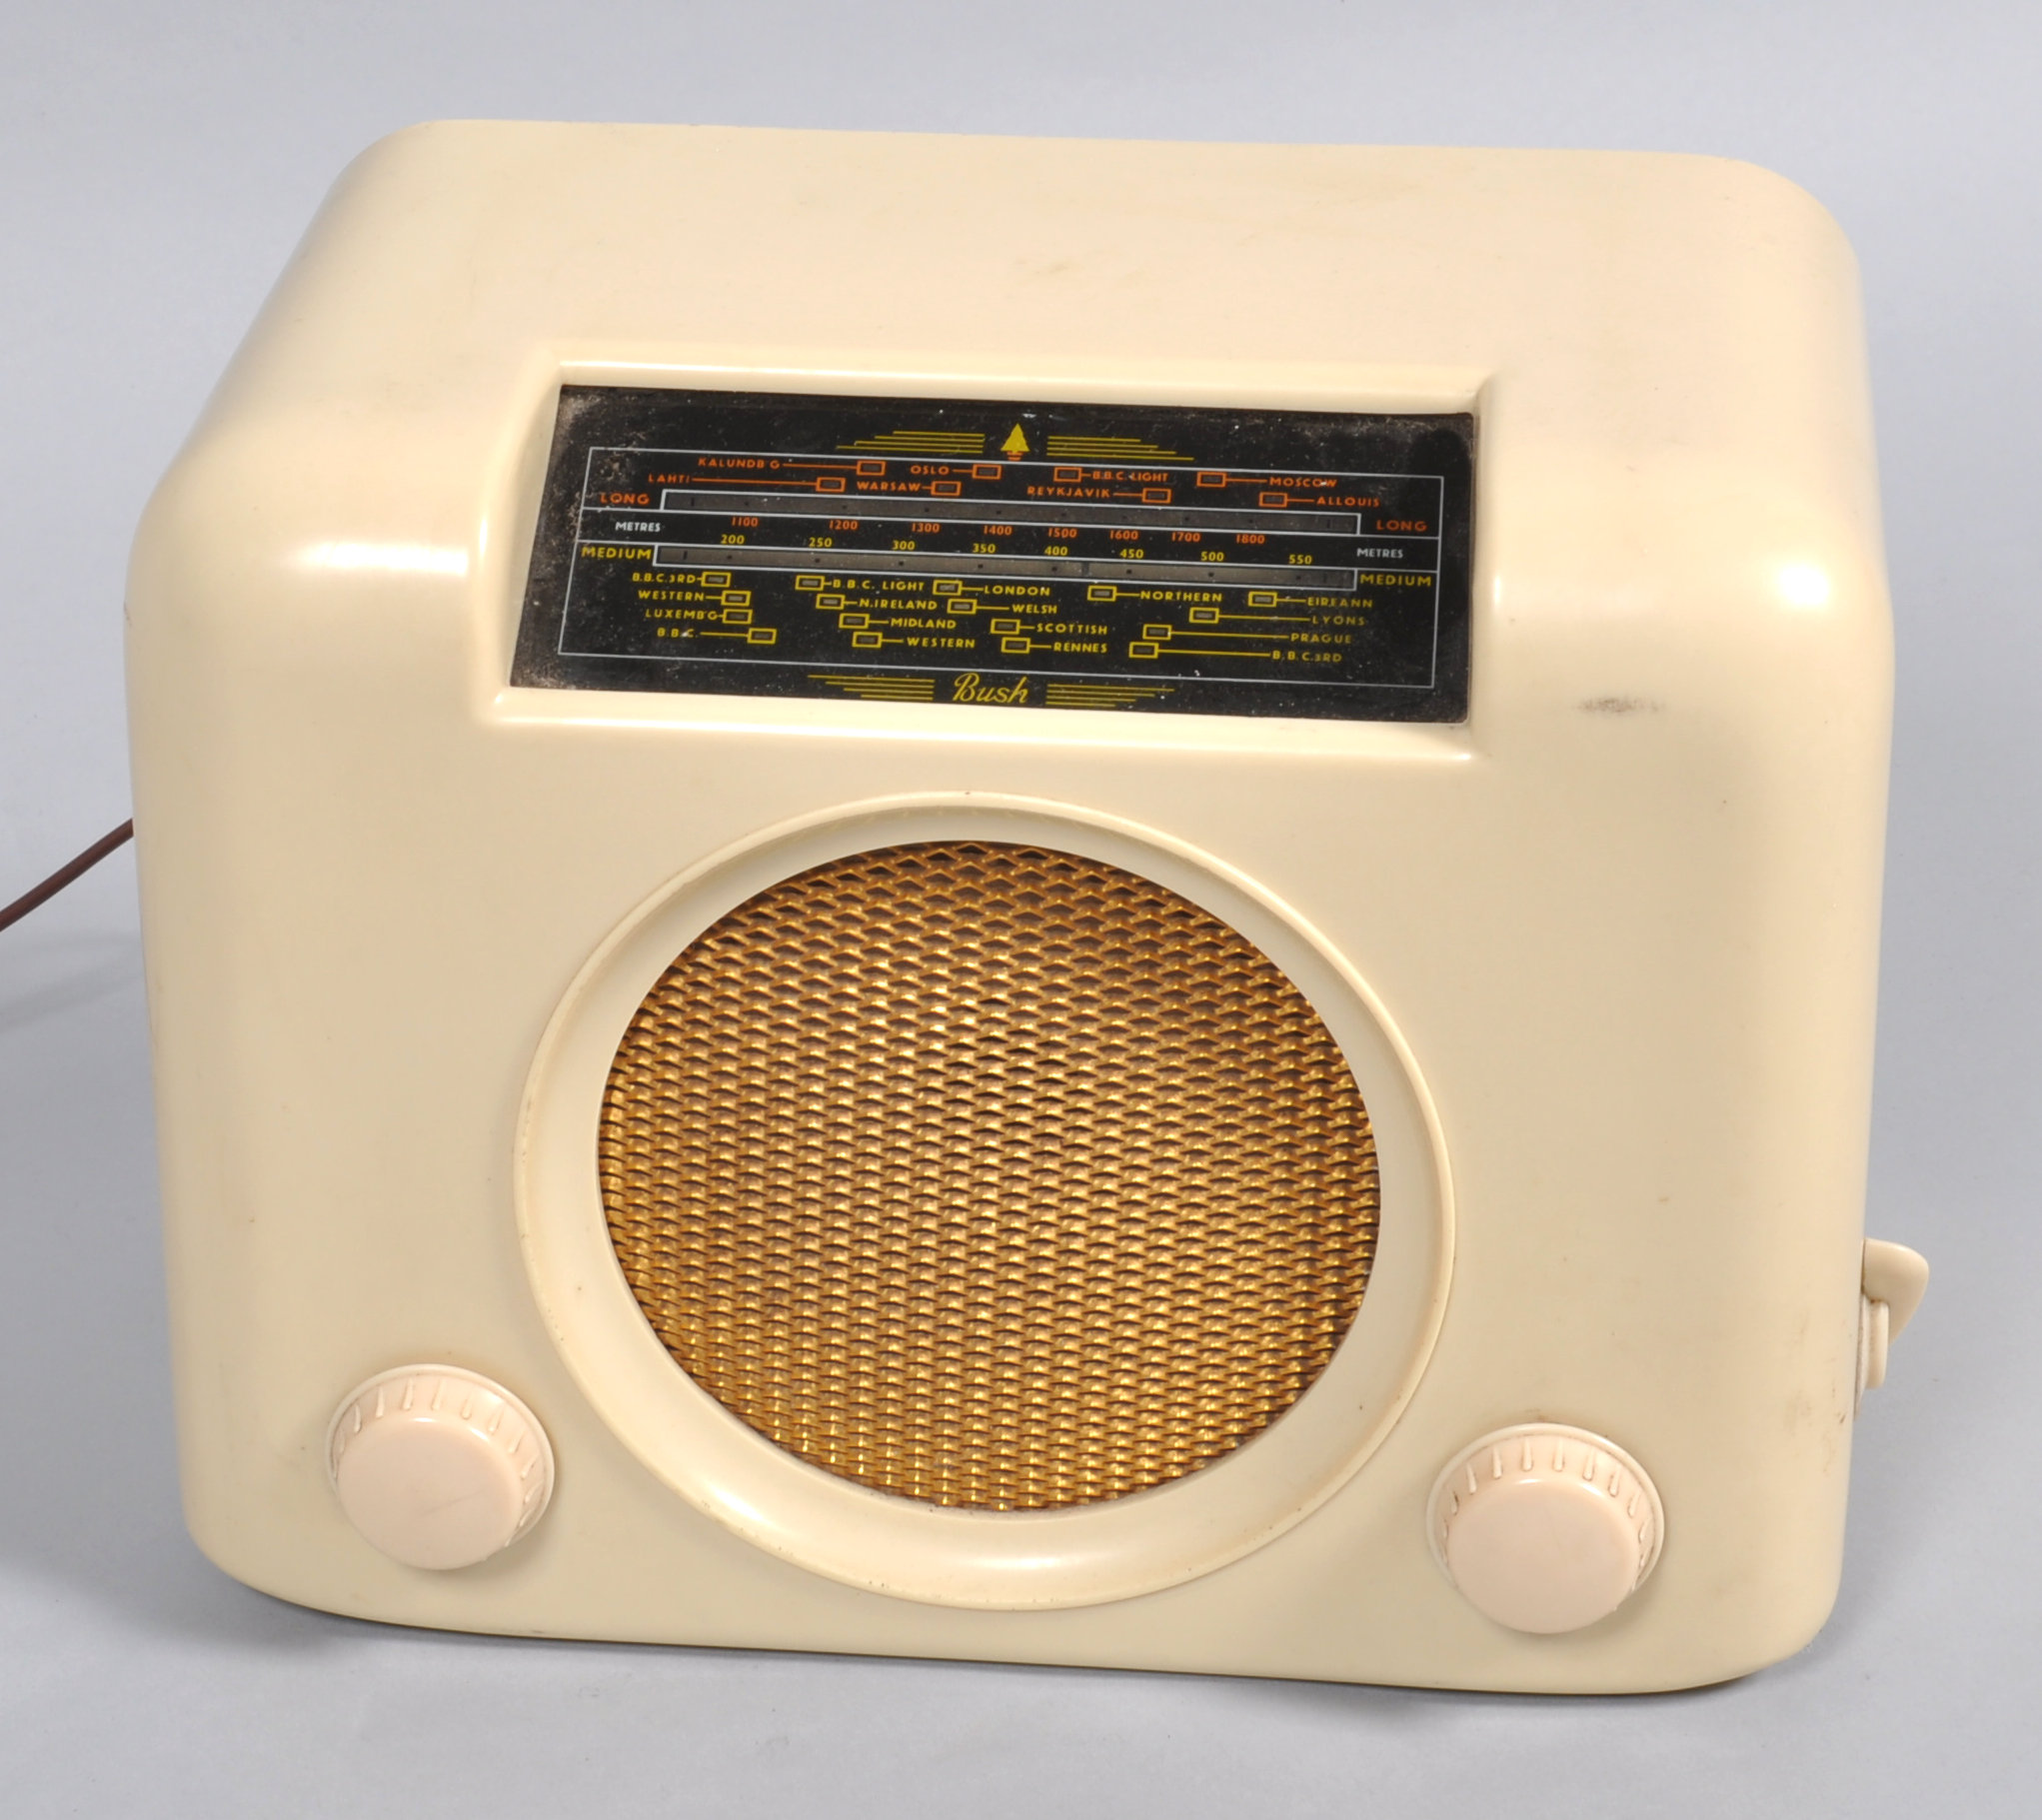 A Bush DAC 90A radio,